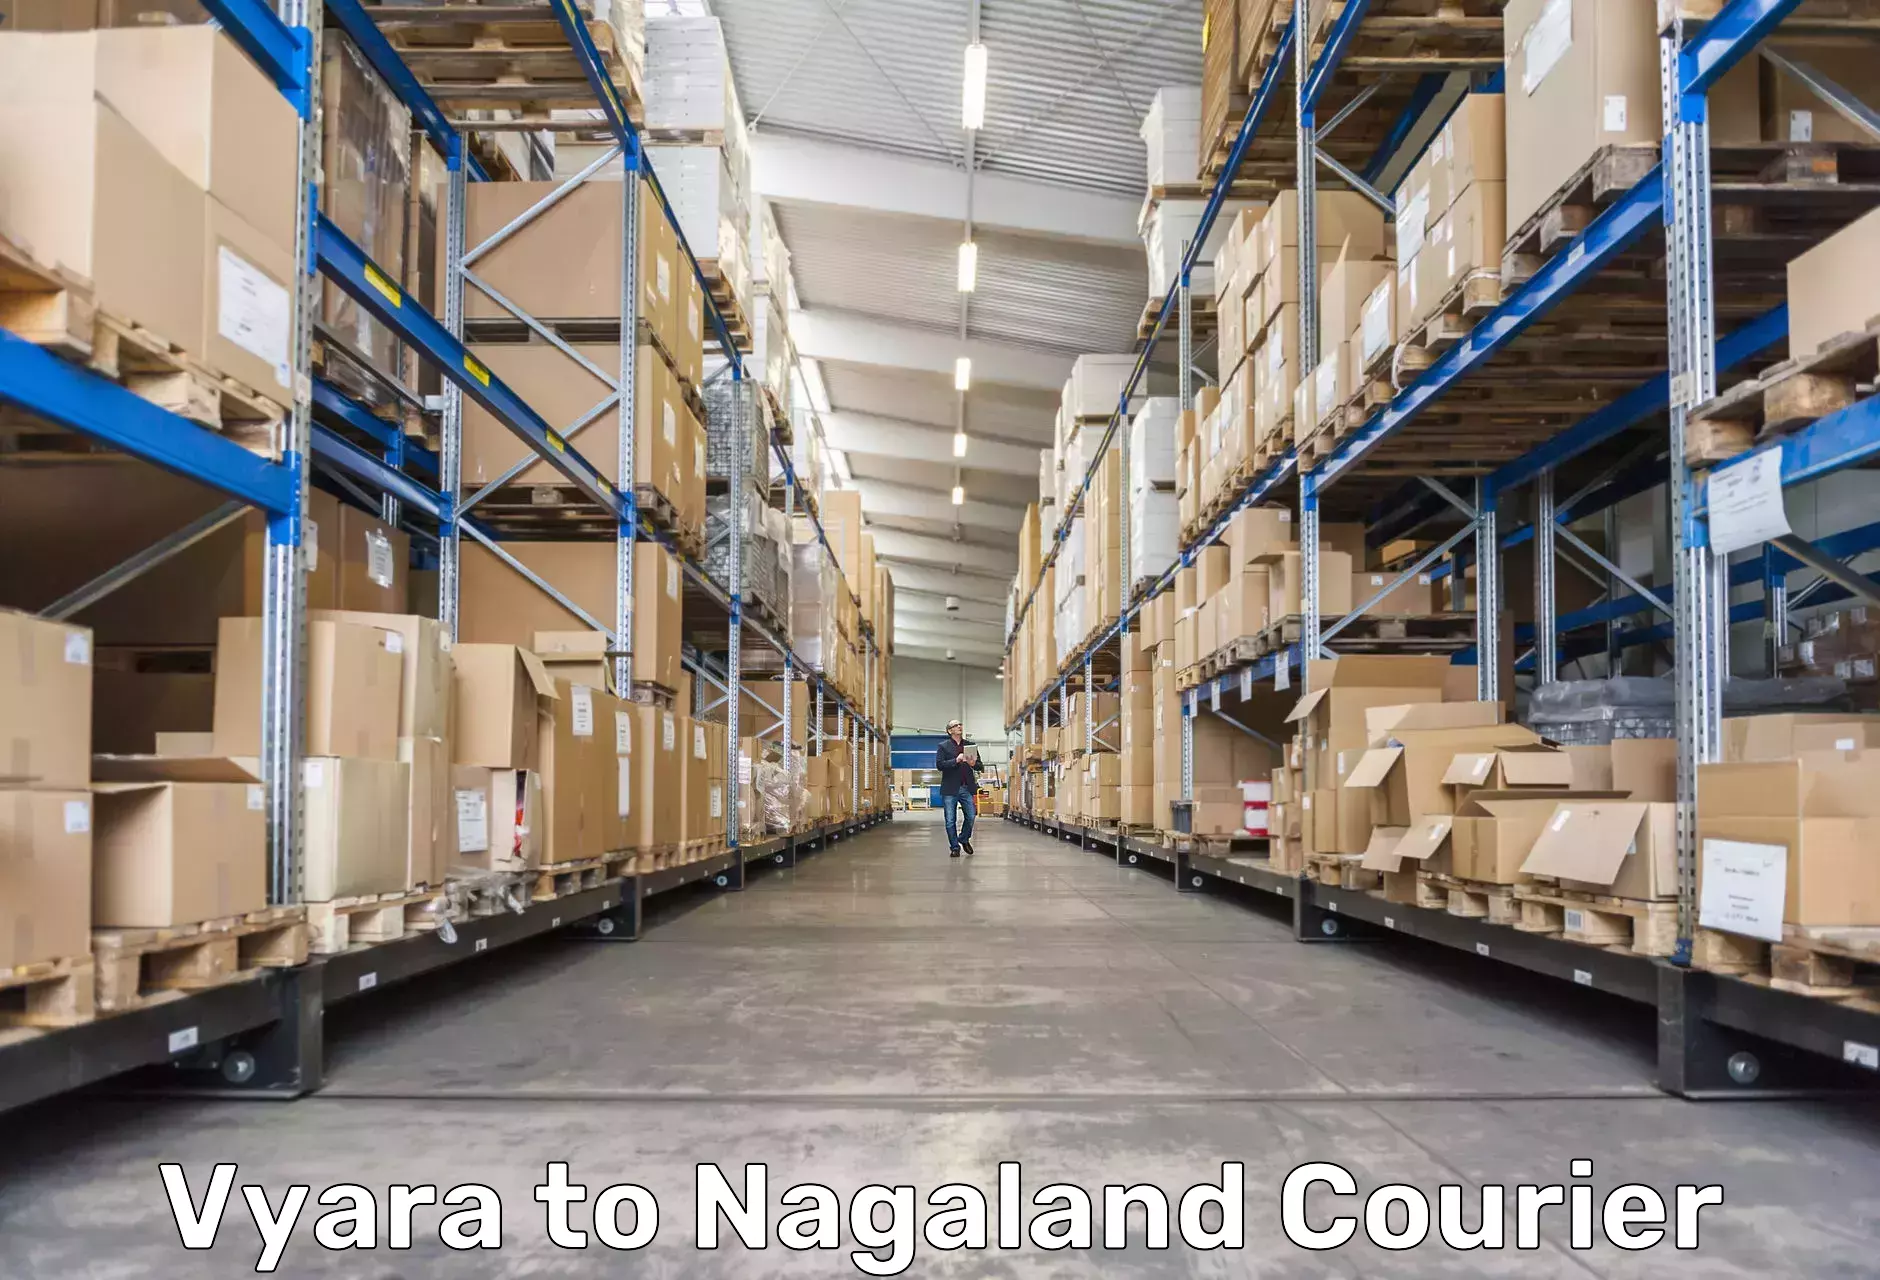 Local courier options Vyara to Nagaland